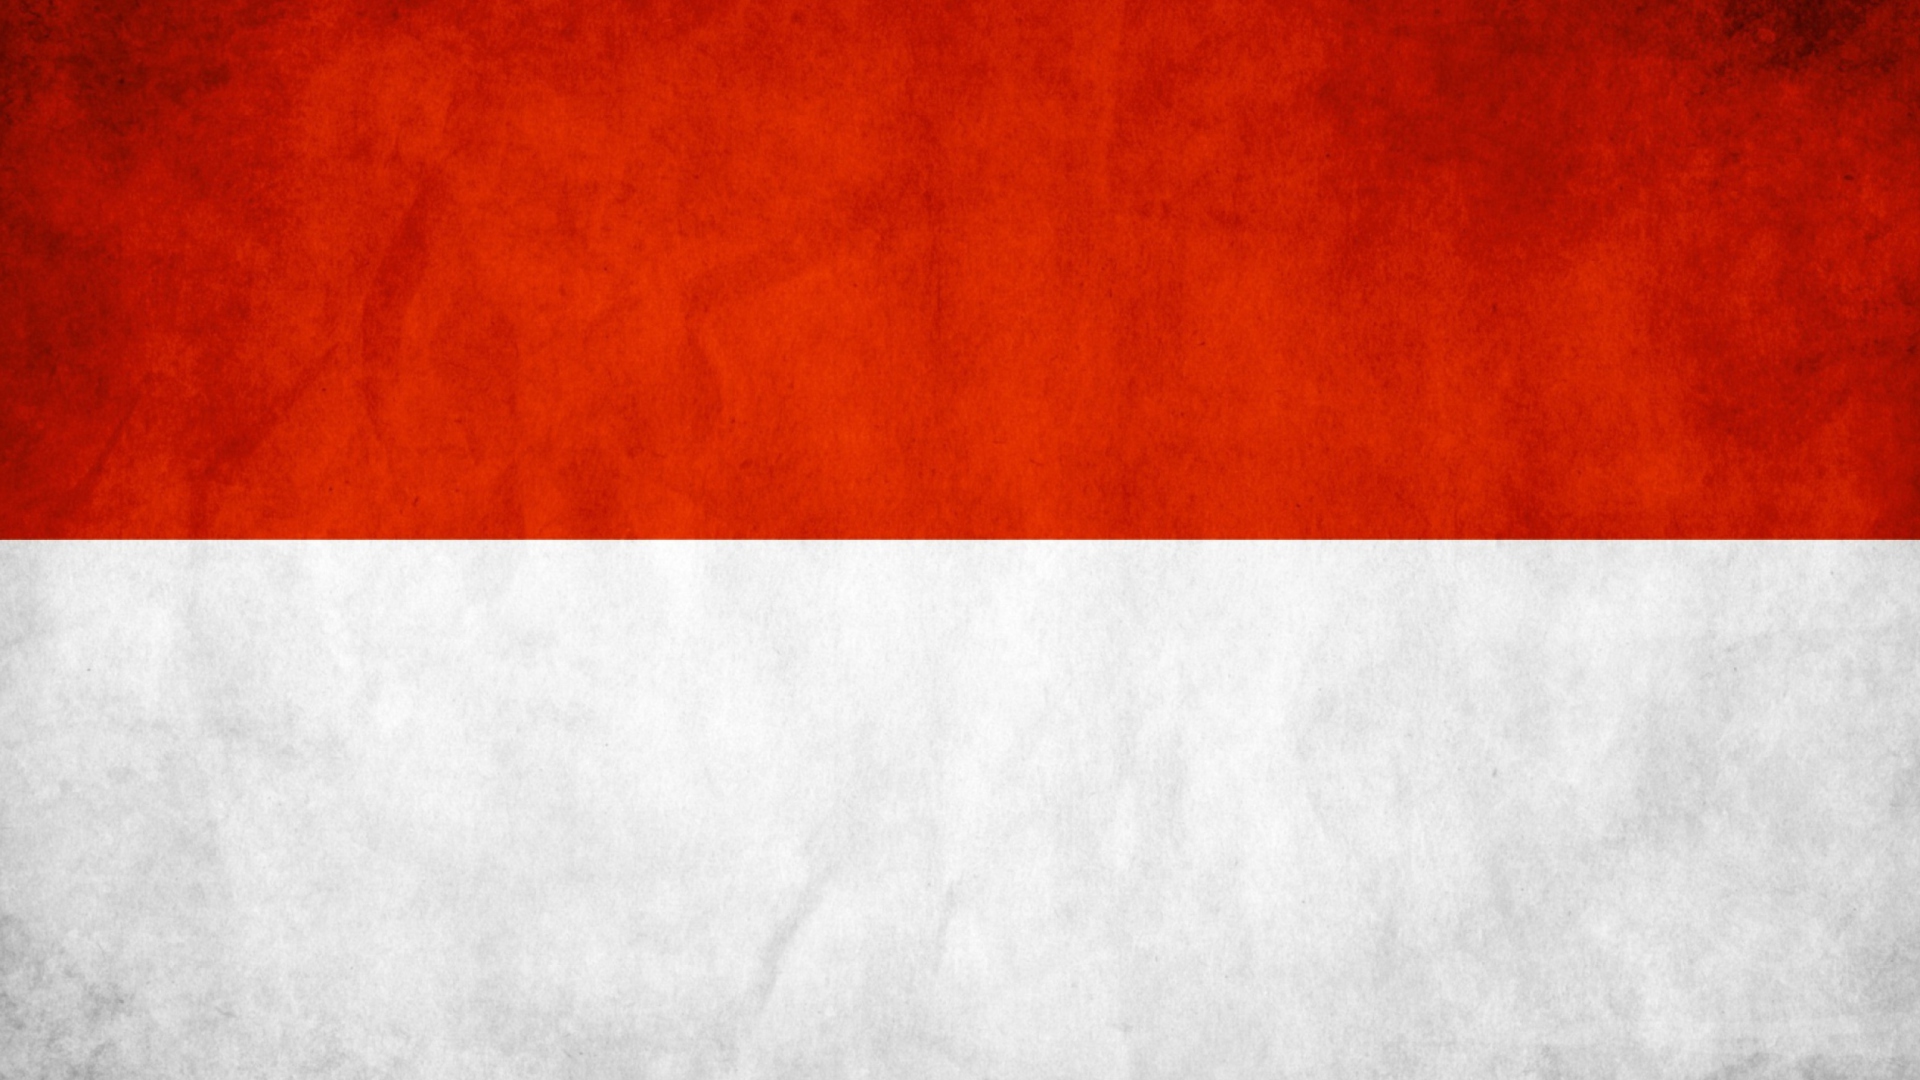 Indonesia Grunge Flag Wallpaper For Desktop 19x1080 Full Hd